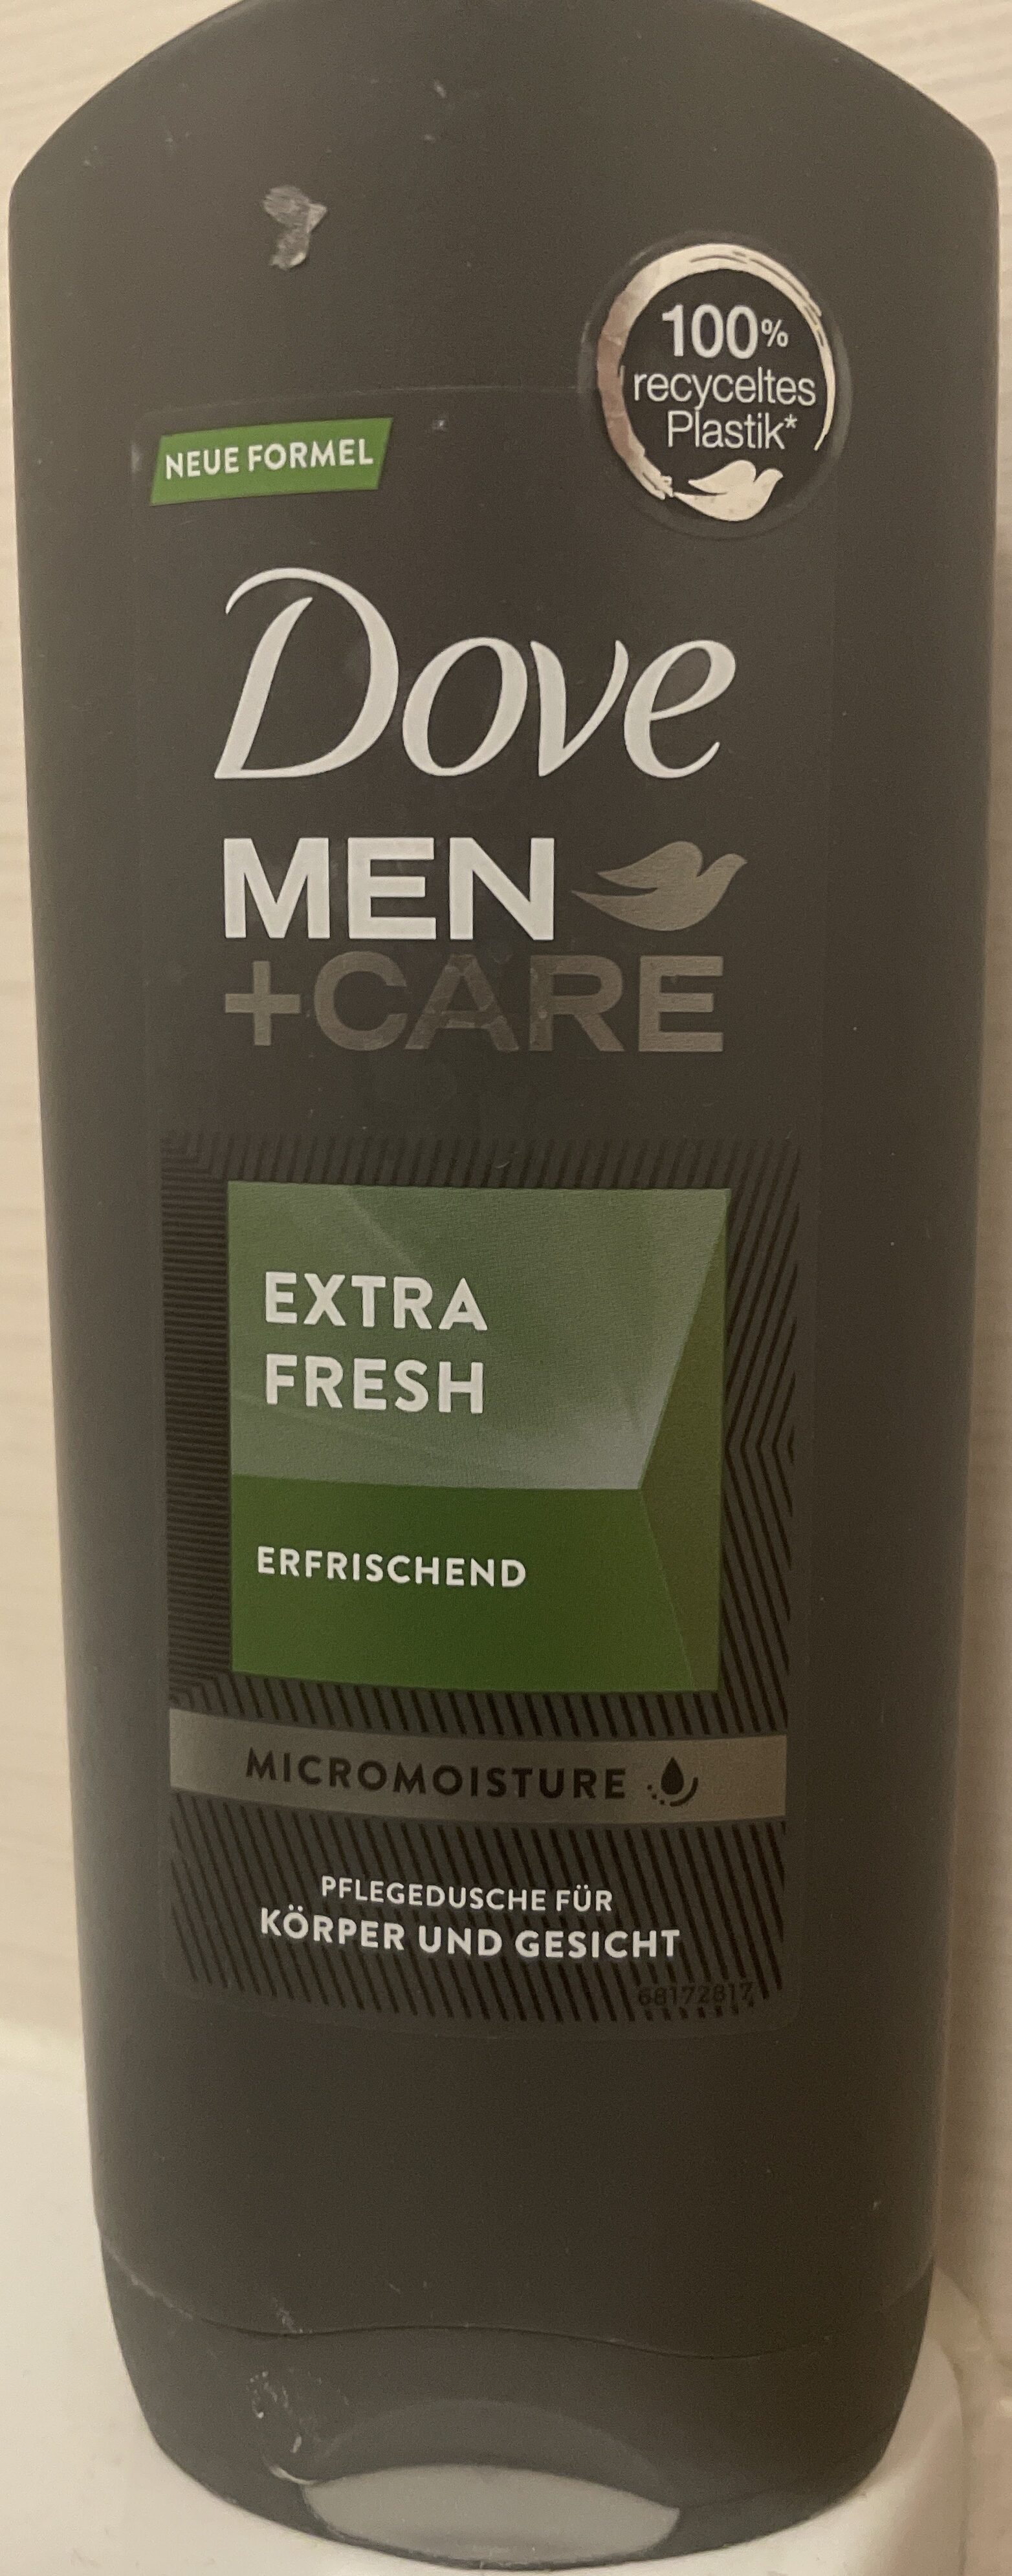 Dove Men  care Pflegedusche für Körper und Gesicht - Product - de